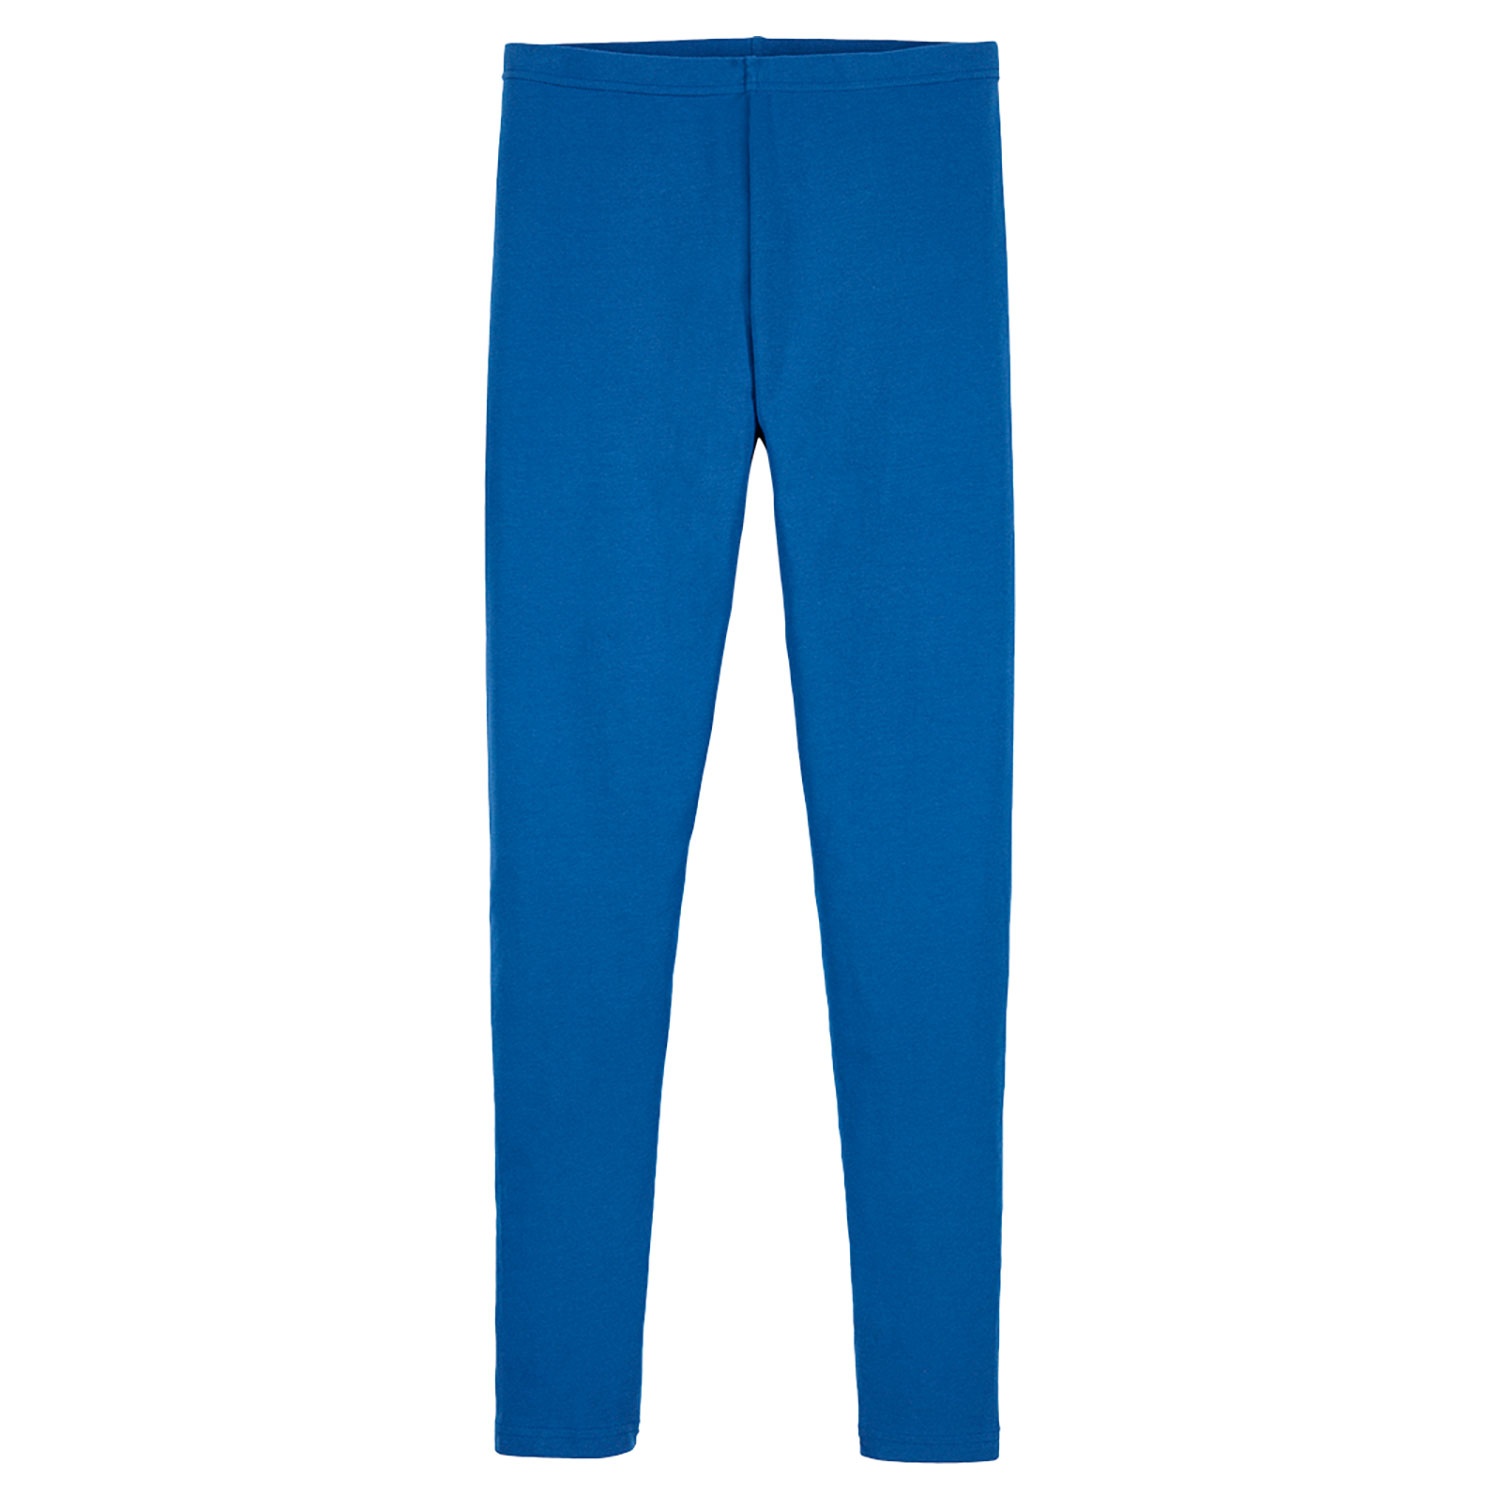 BLUE MOTION Damen Winter-Leggings